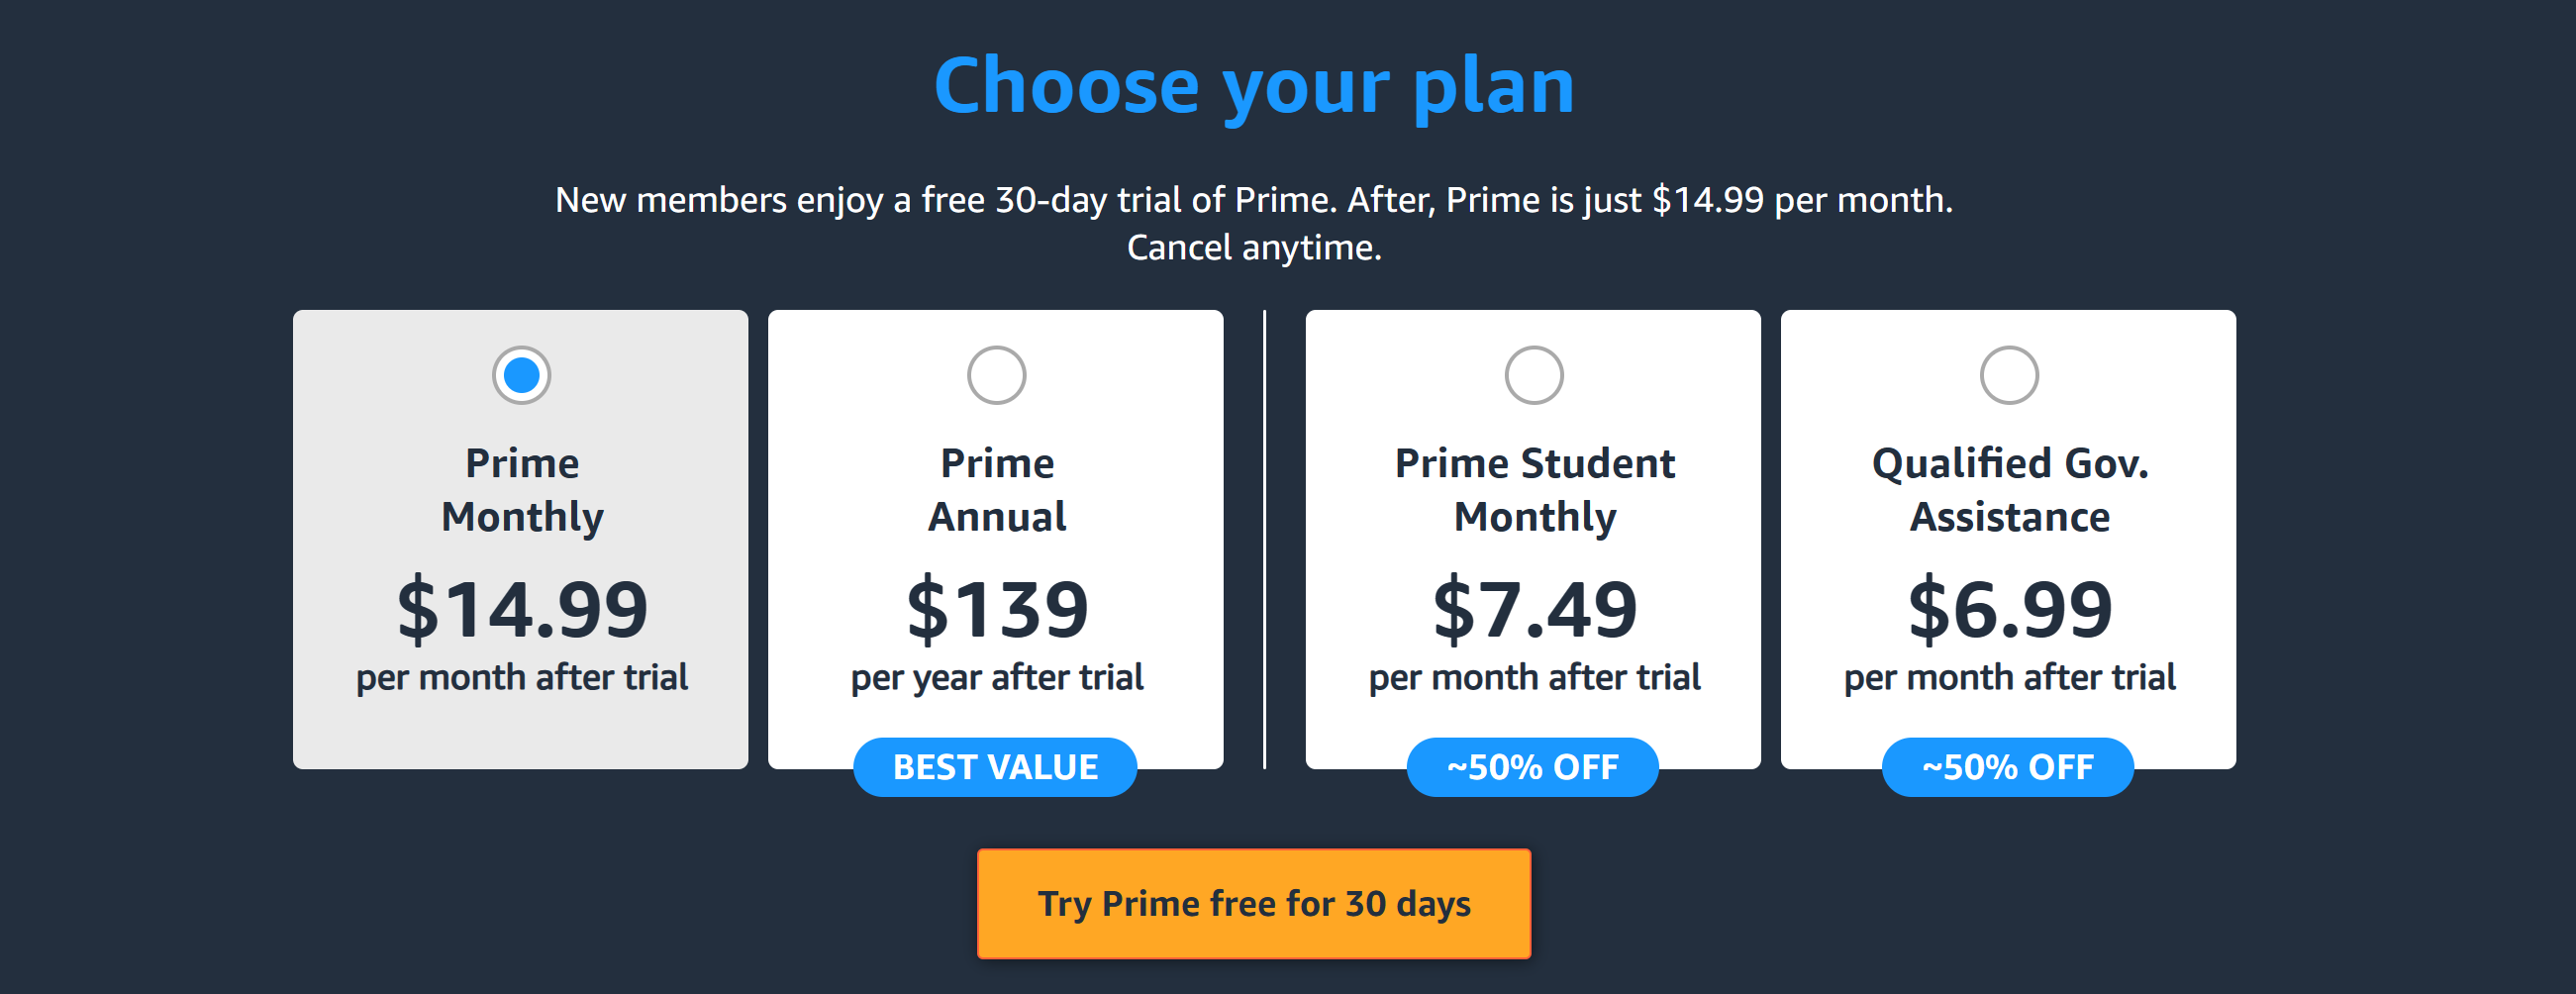 Amazon Pricing Pricing Plan 